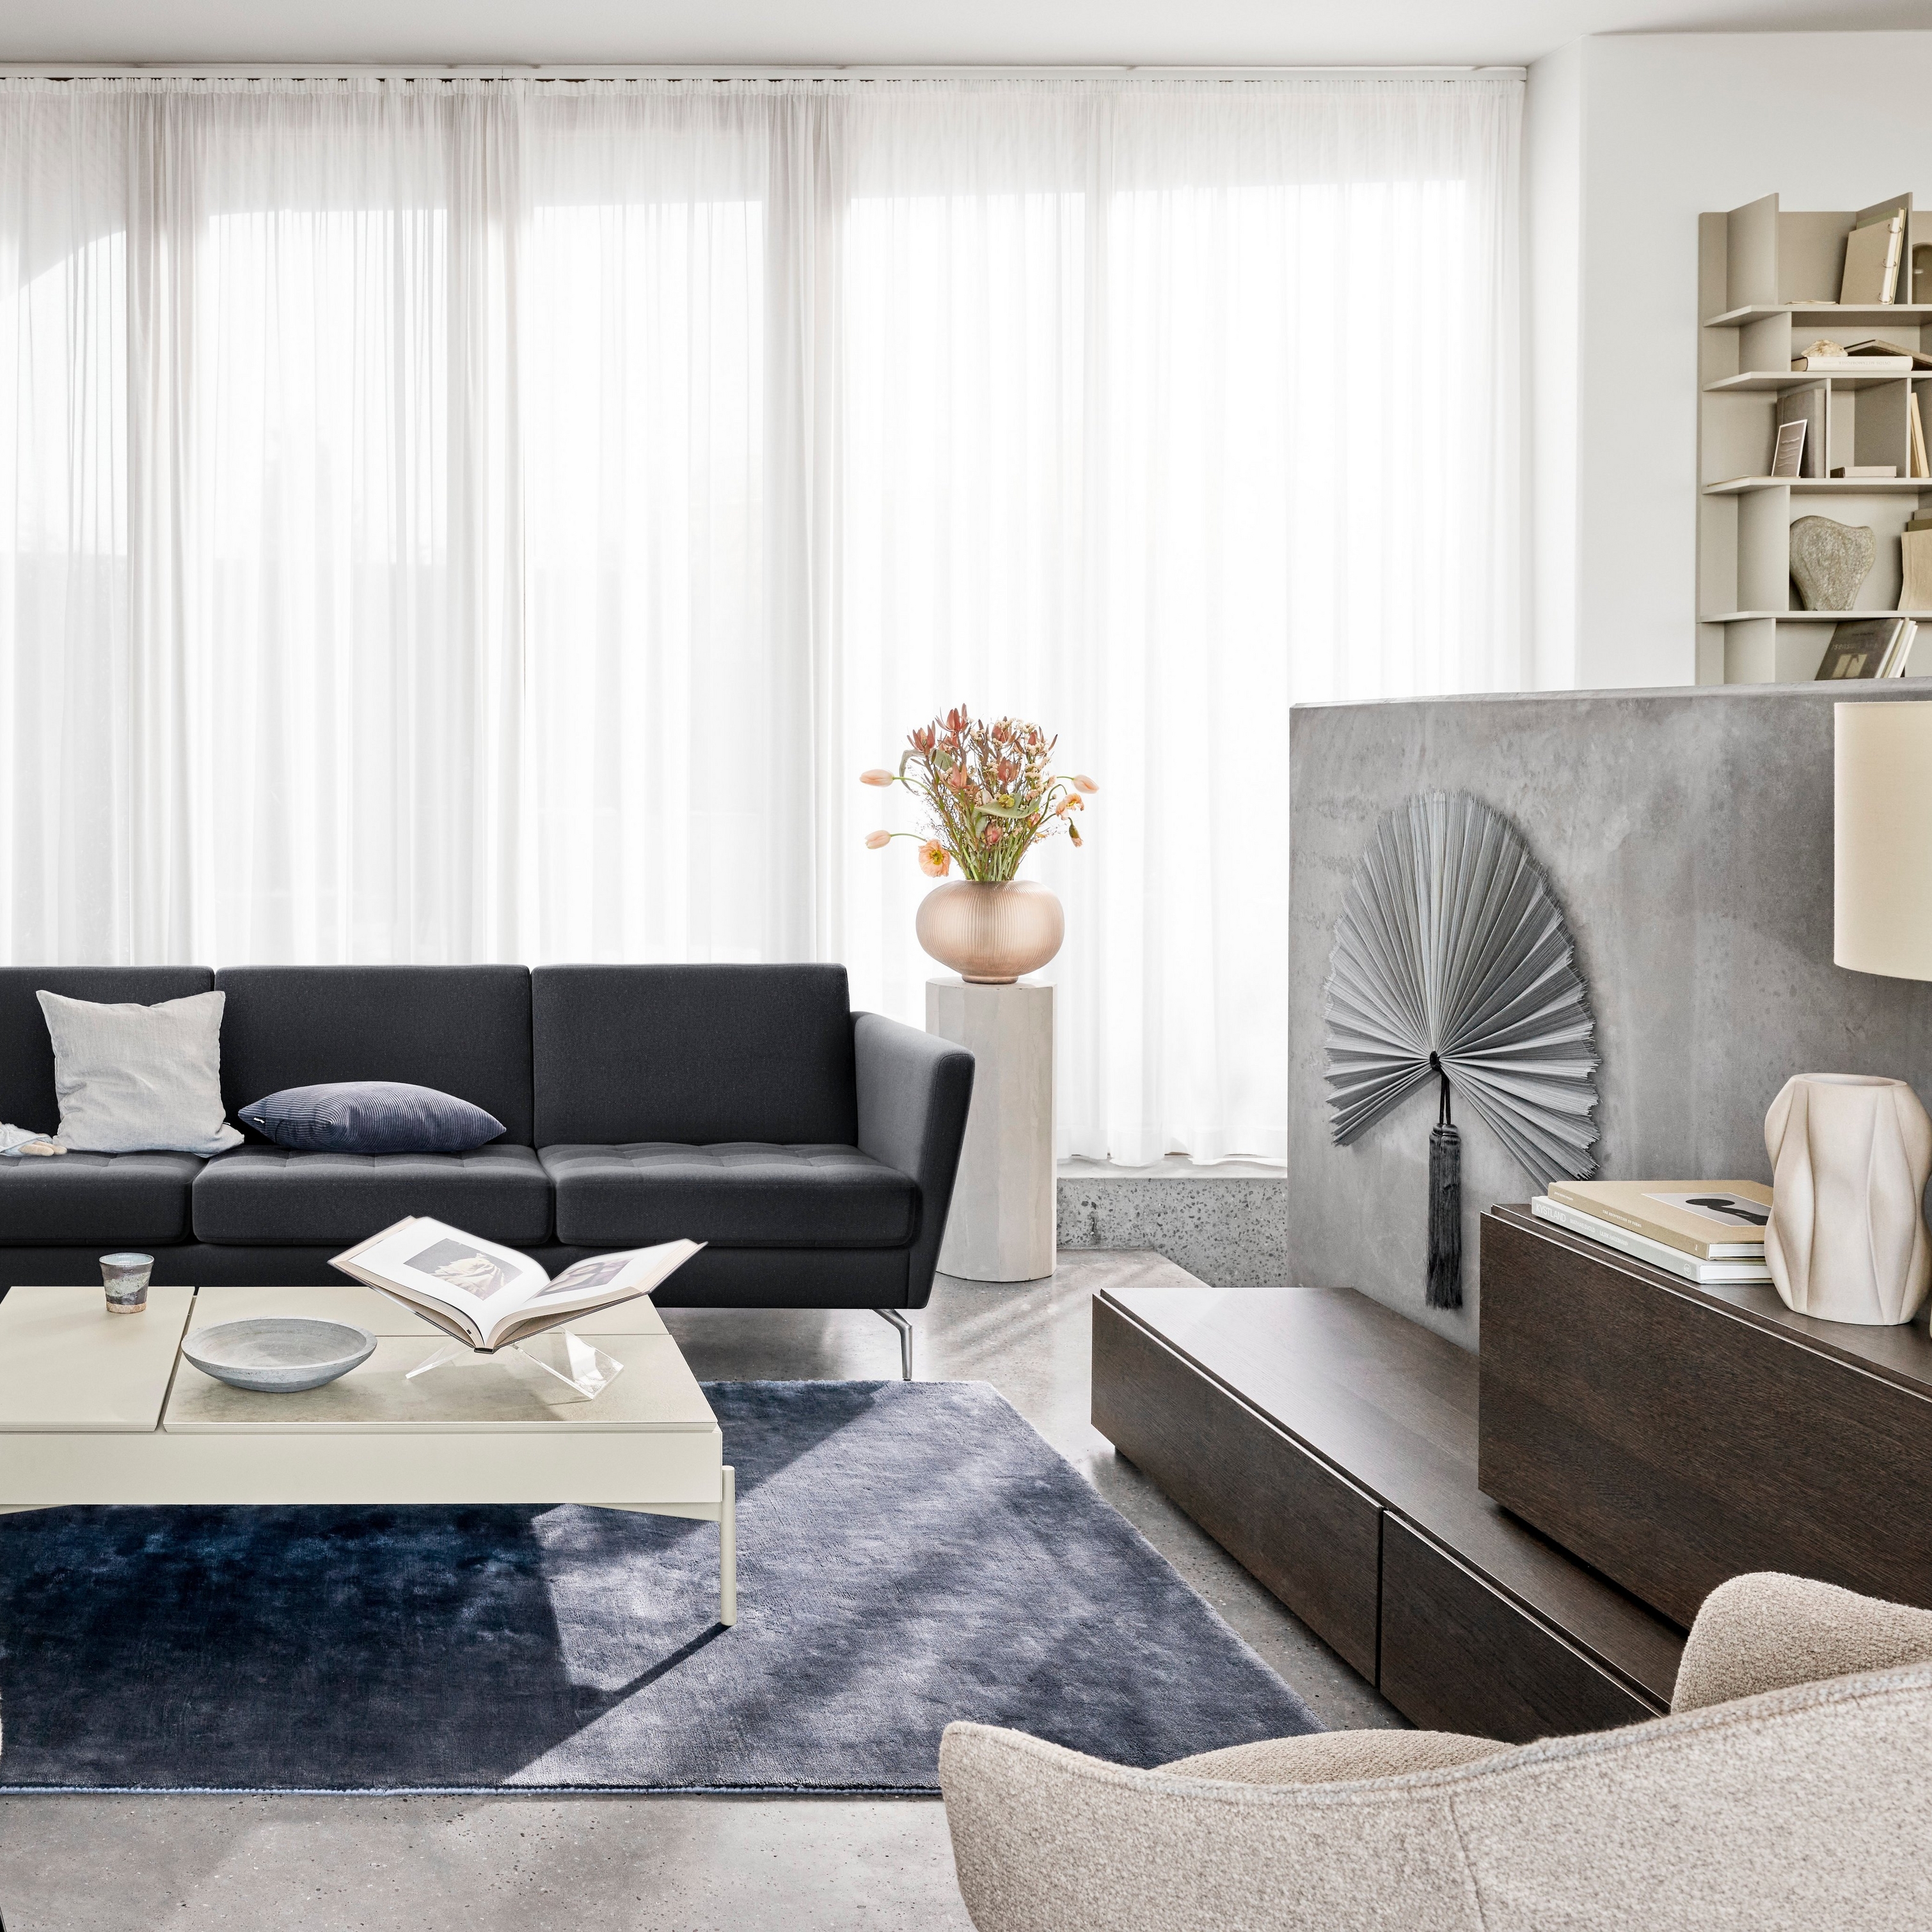 Moderna sala con sofá negro, sillas, cortinas transparentes y elementos decorativos.